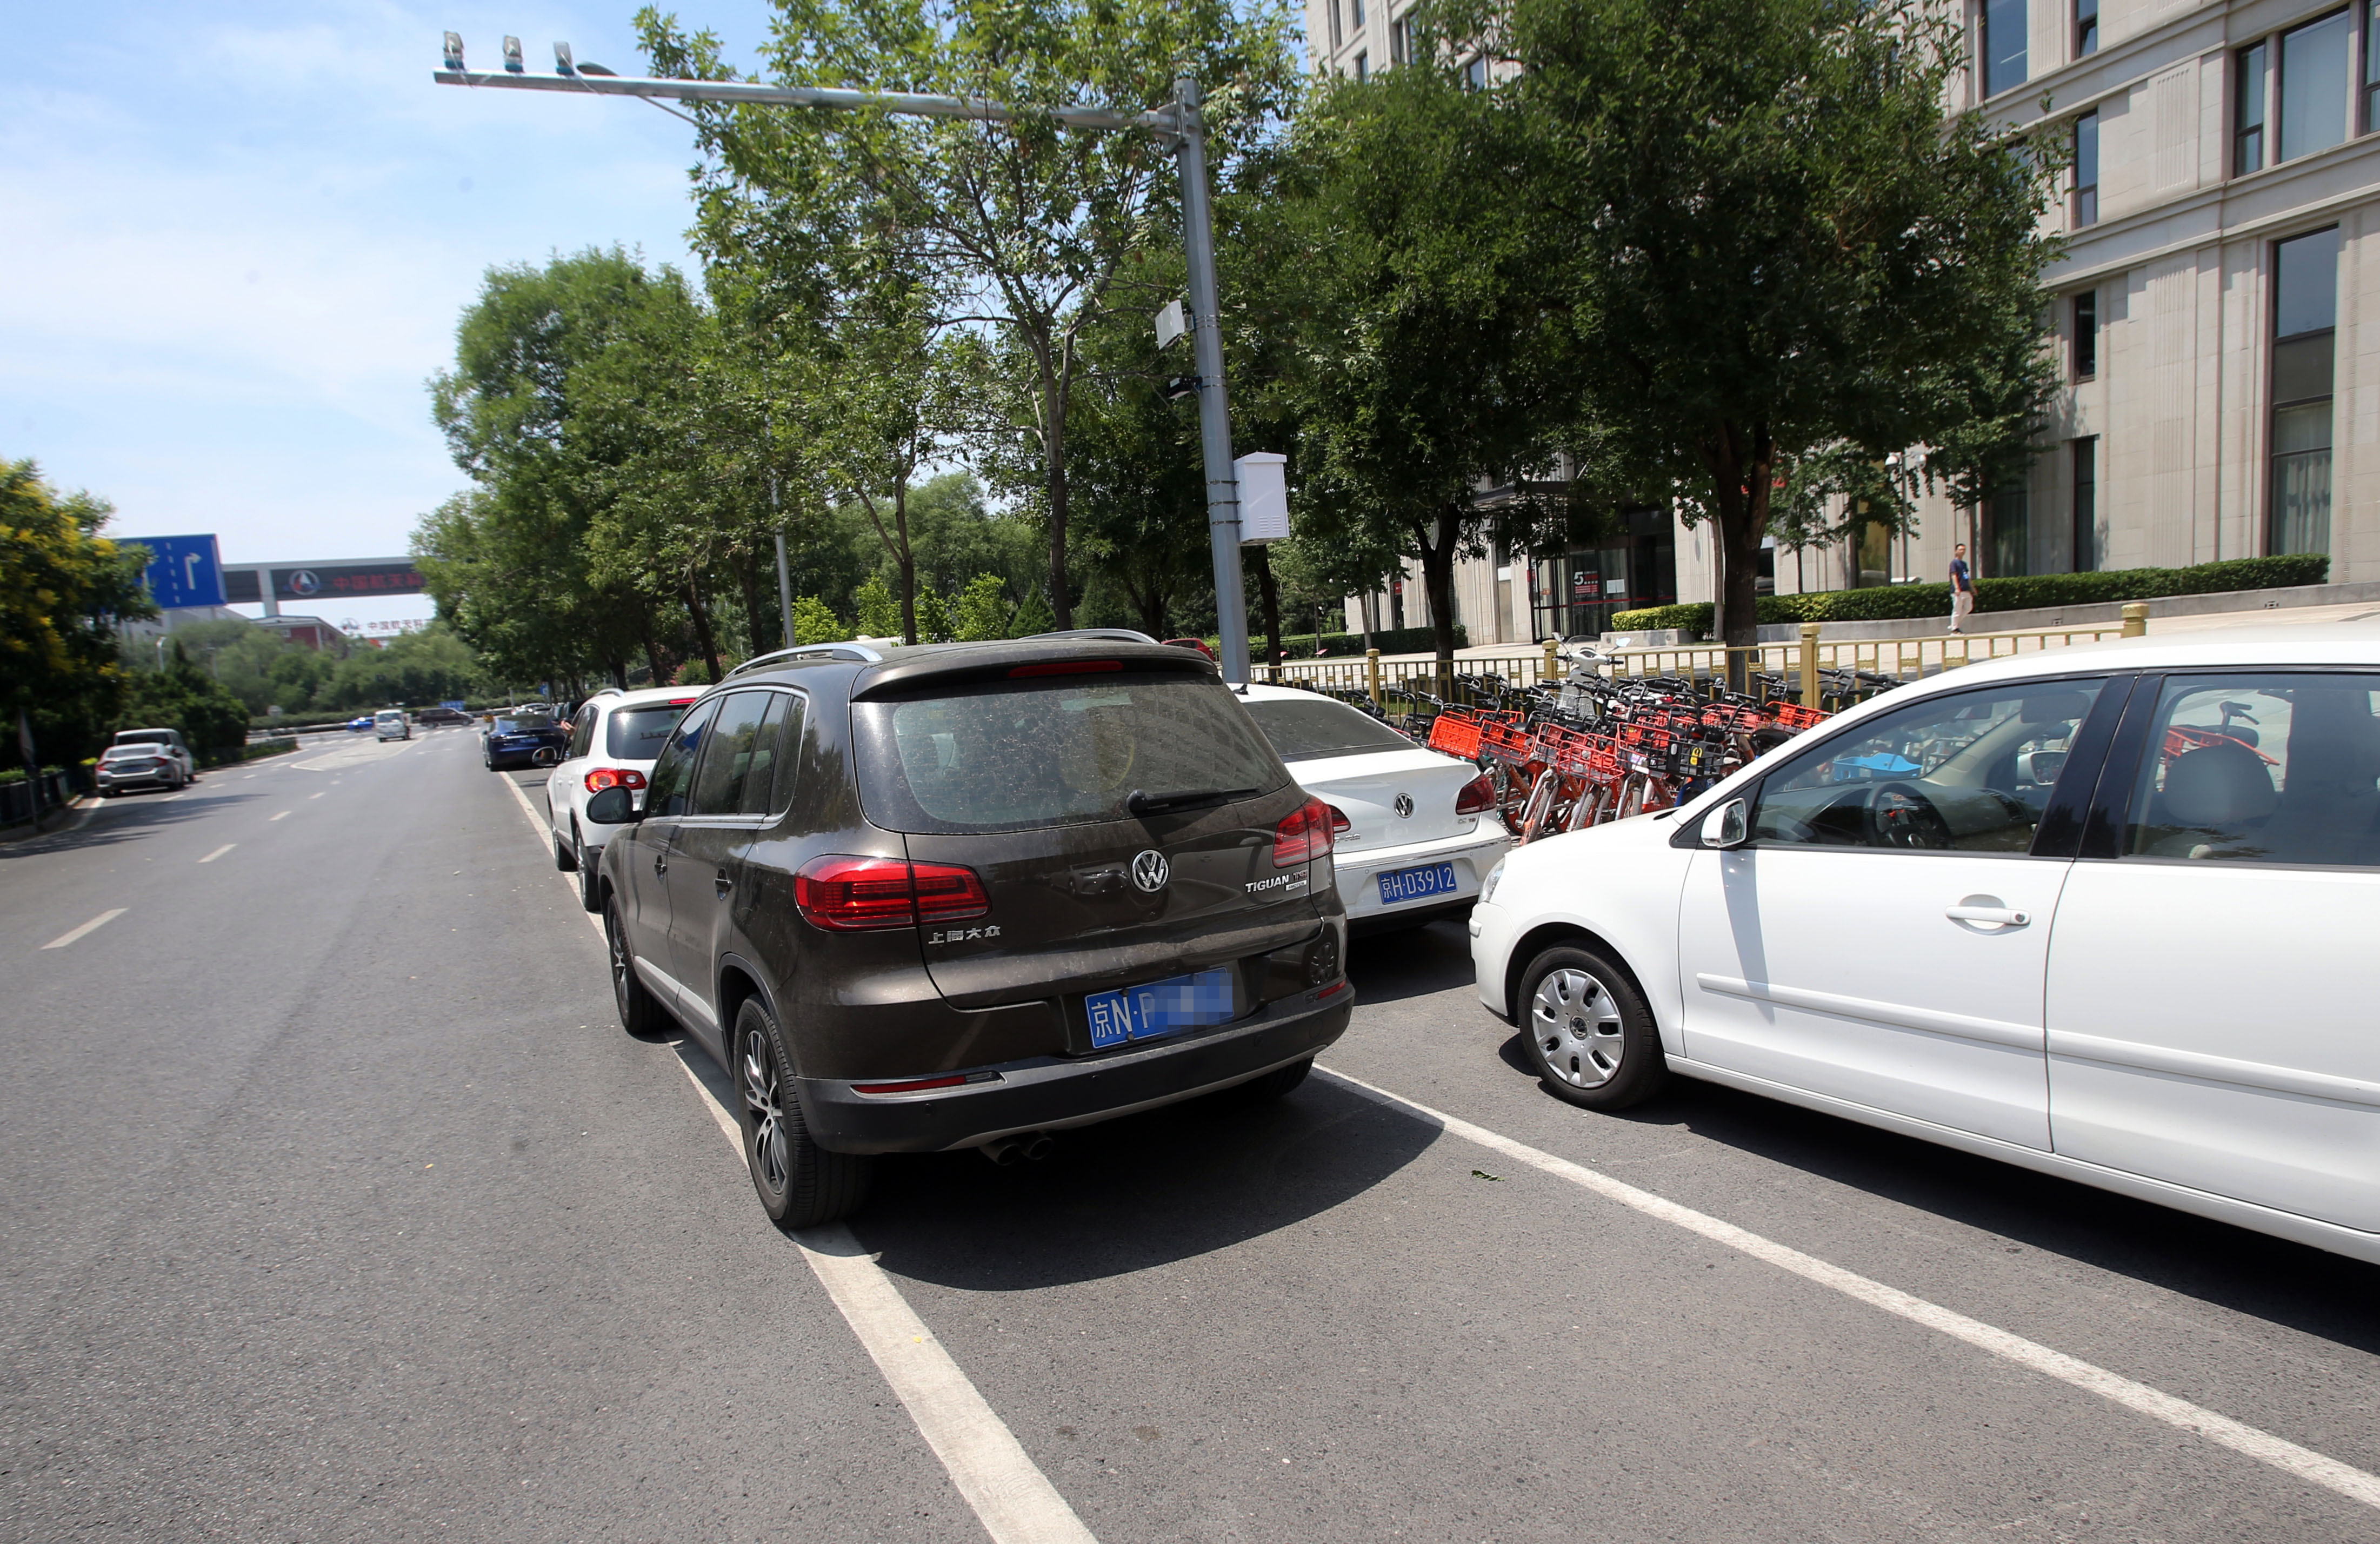 下月北京四区路侧停车将电子收费,容易搞晕的问题就这些